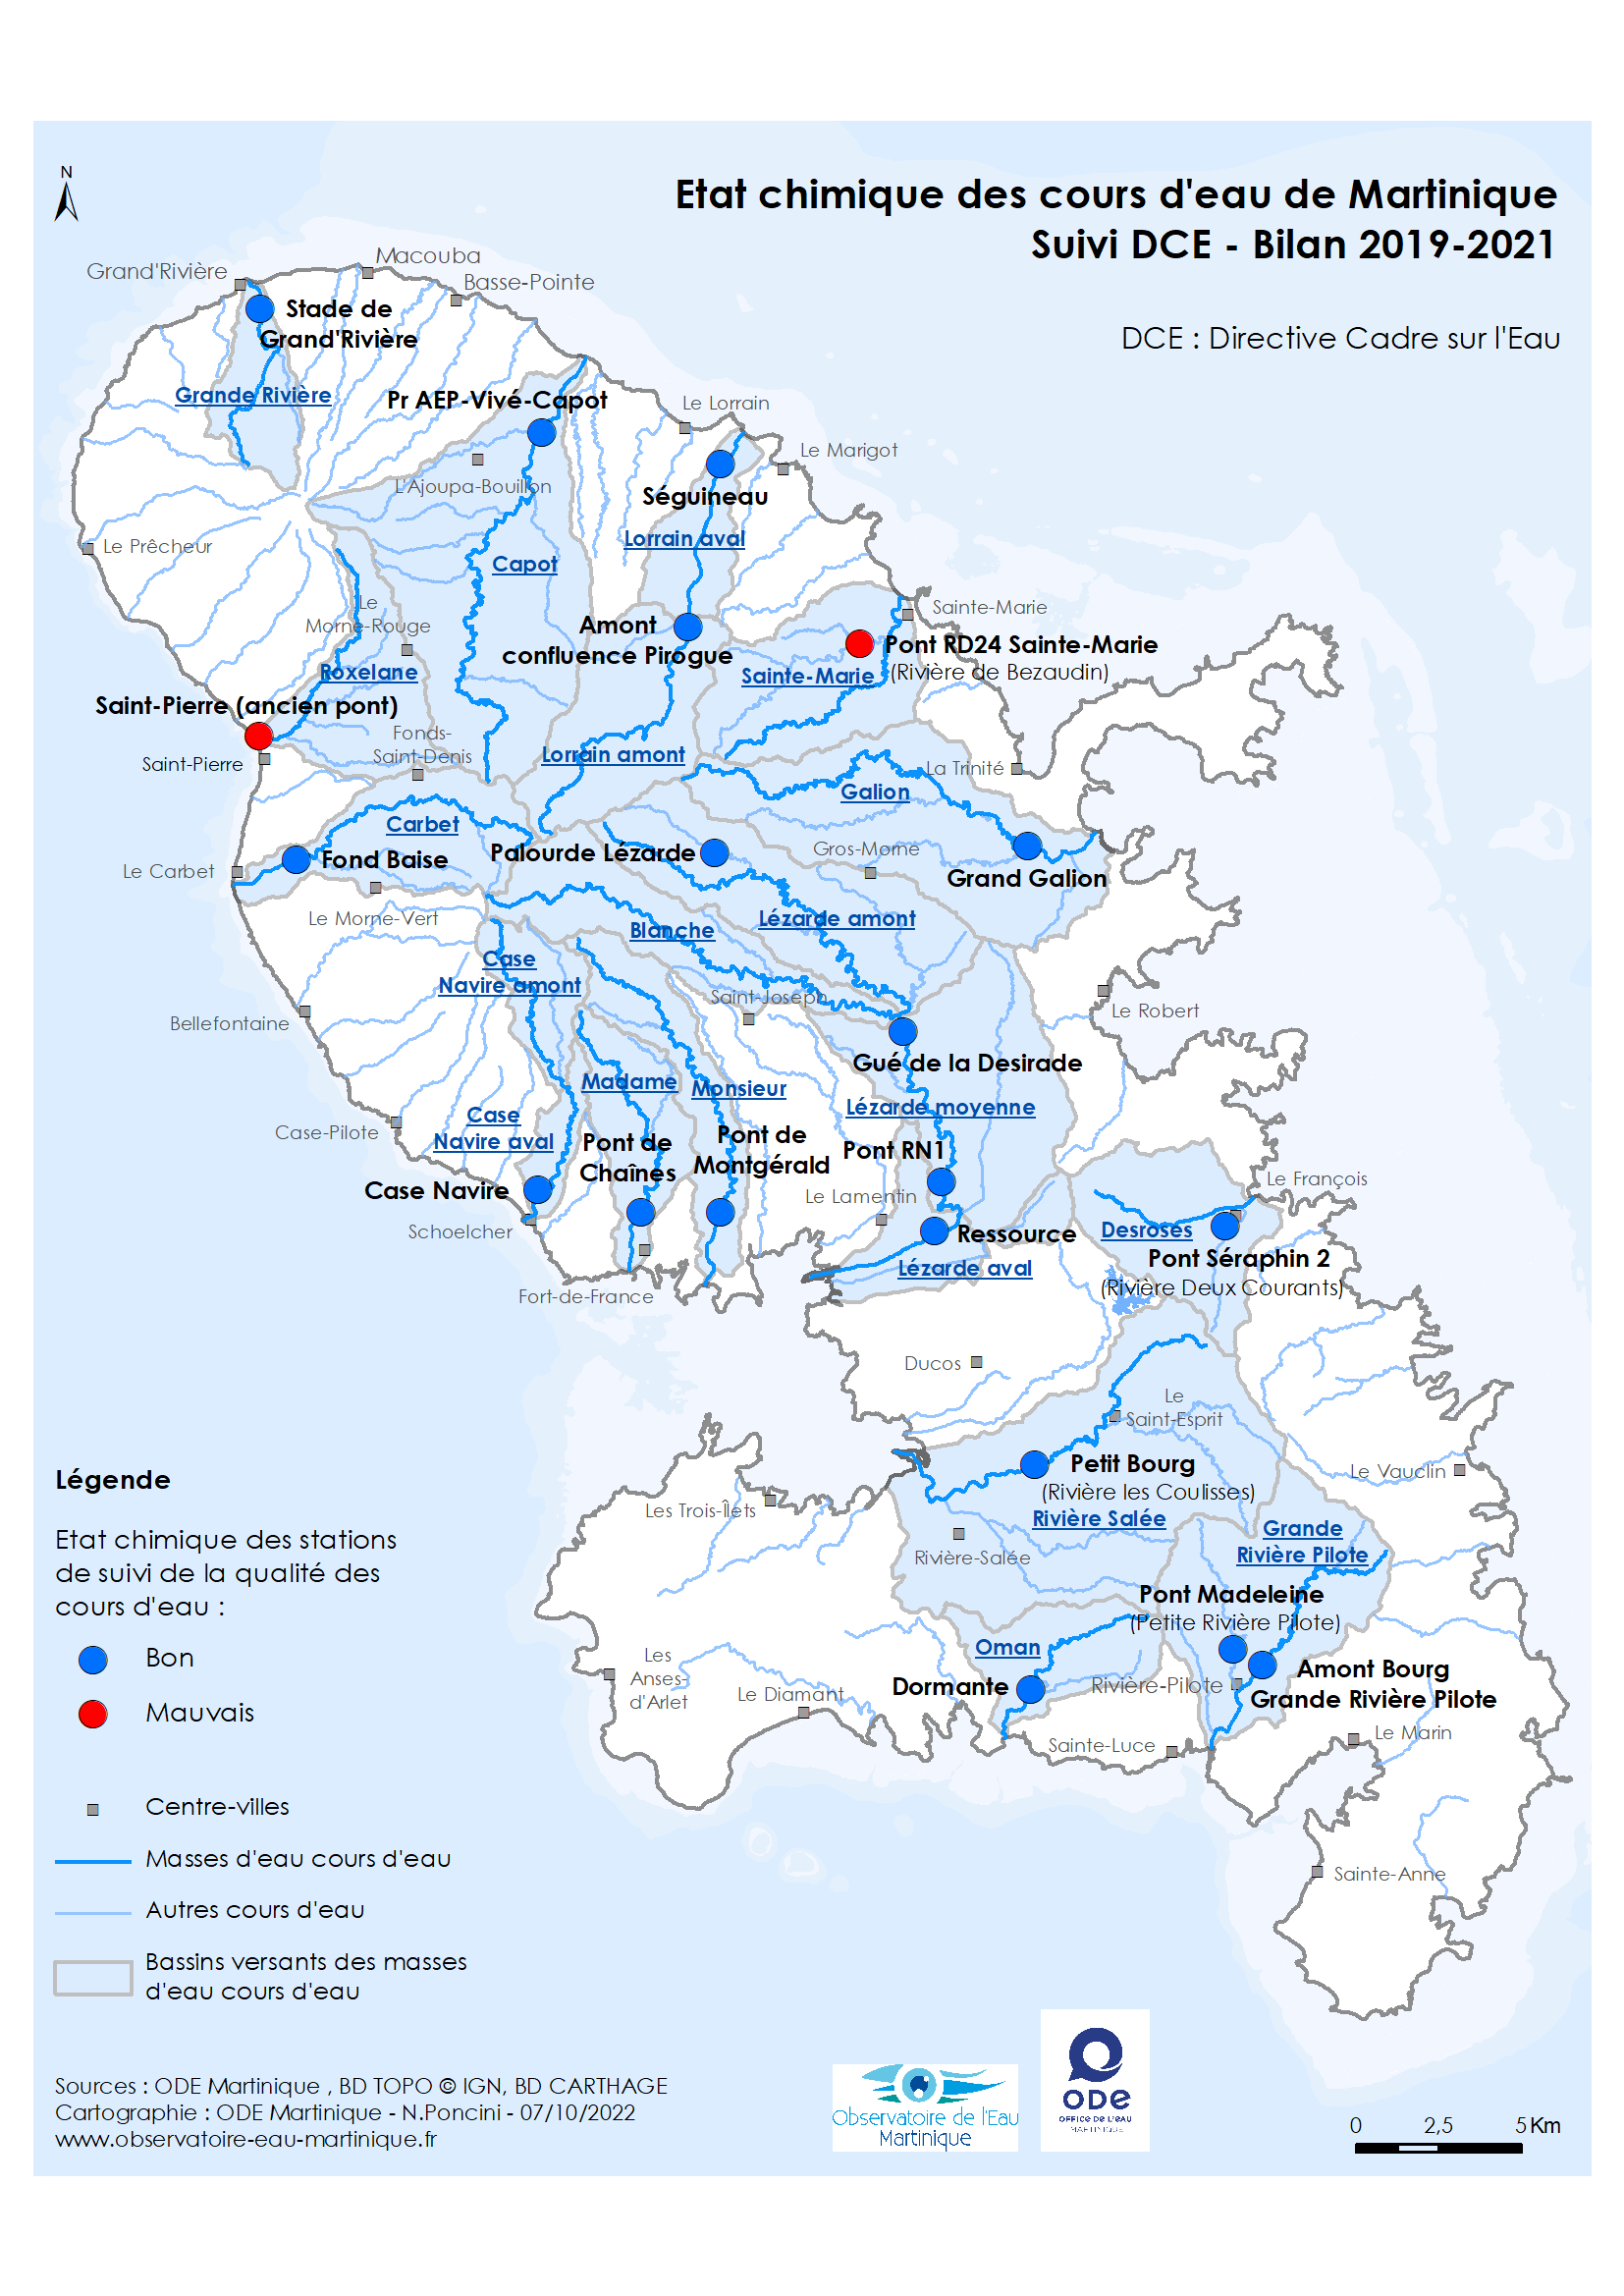 Etat chimique des cours d'eau de Martinique - Suivi DCE - Bilan 2019-2021